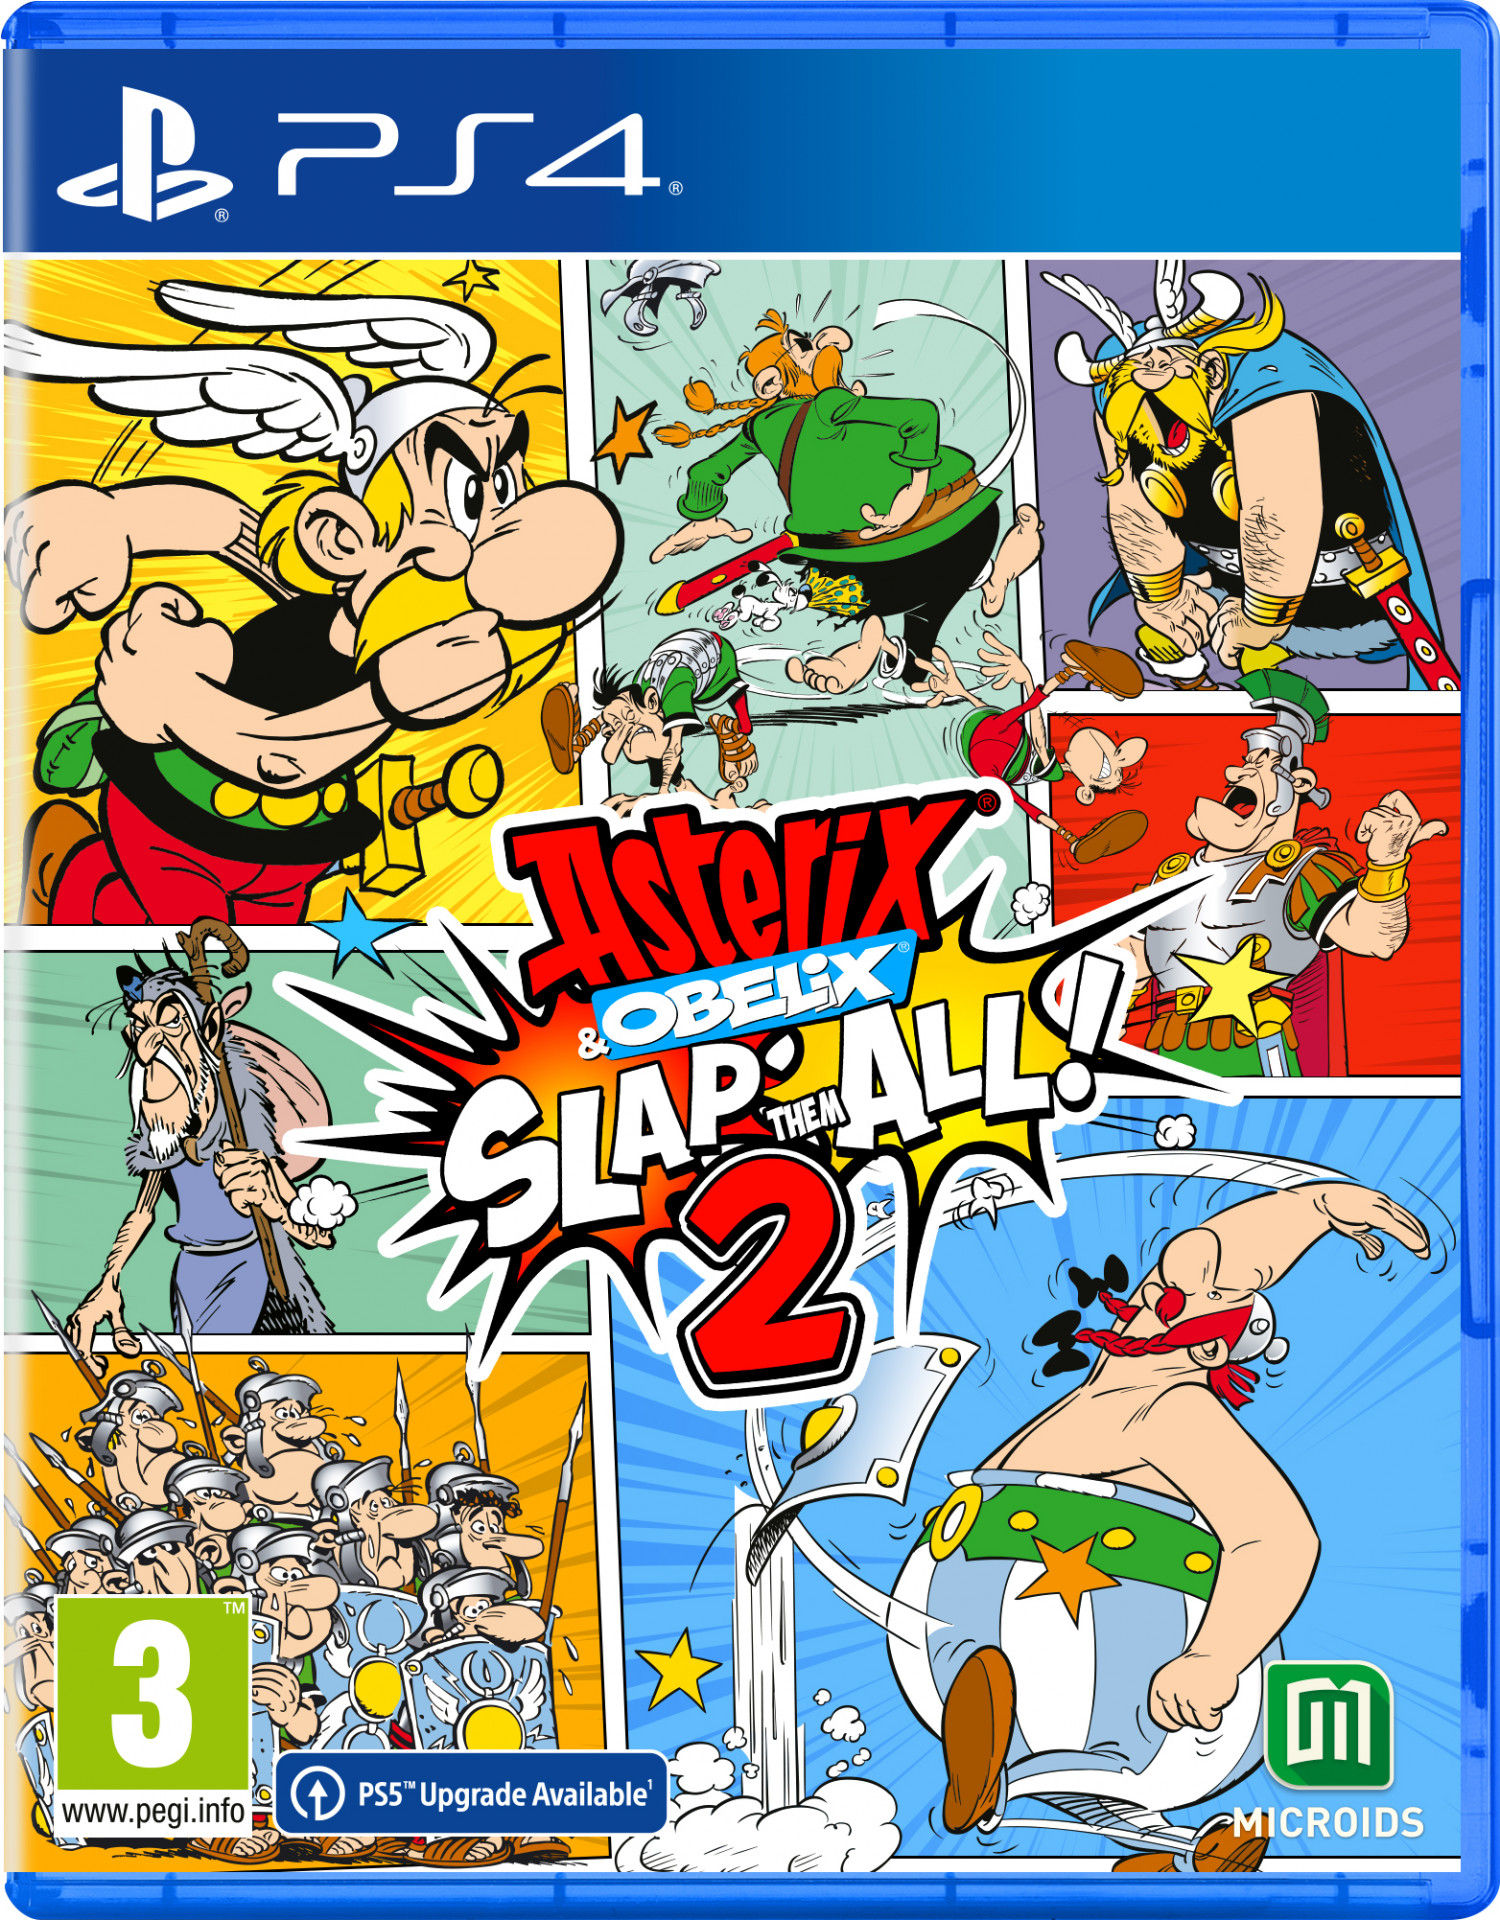 Asterix & Obelix: Slap Them All! 2 PlayStation 4